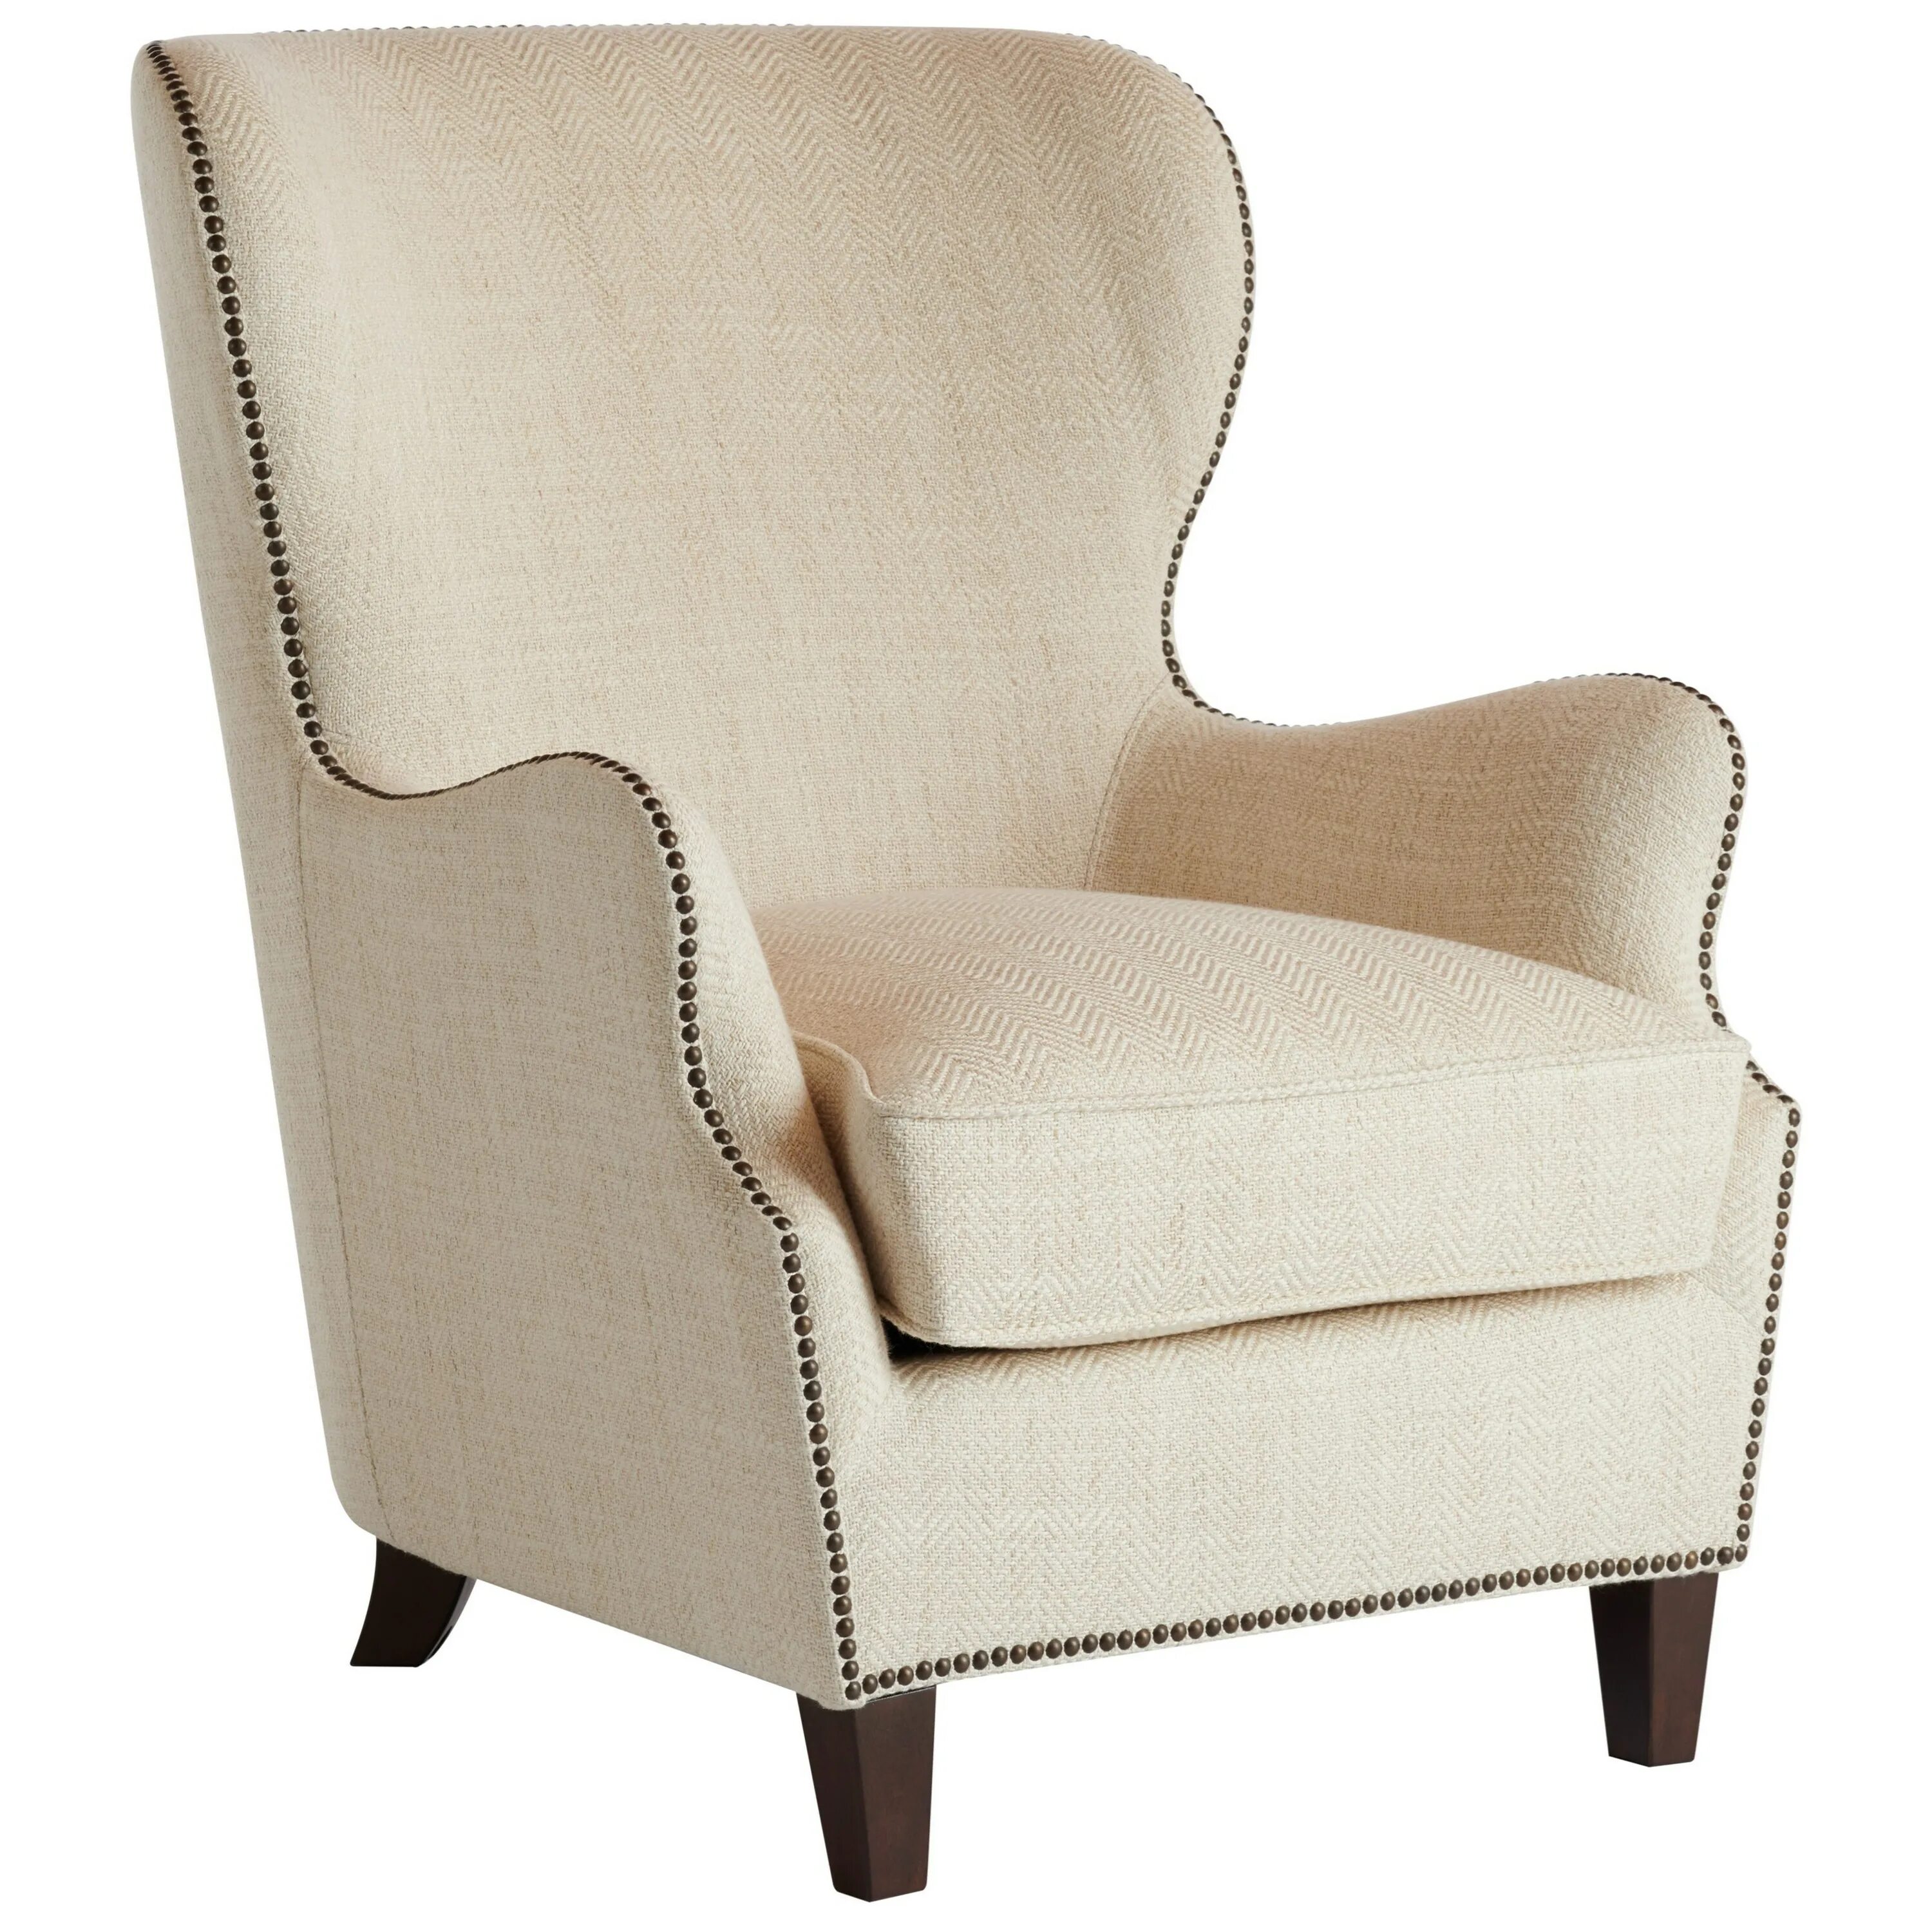 Кресло слоновая кость. Кресло Лидс XH-6151. Кресло "Ivory White Leather". Кресло с широкими подлокотниками. Низкое кресло.